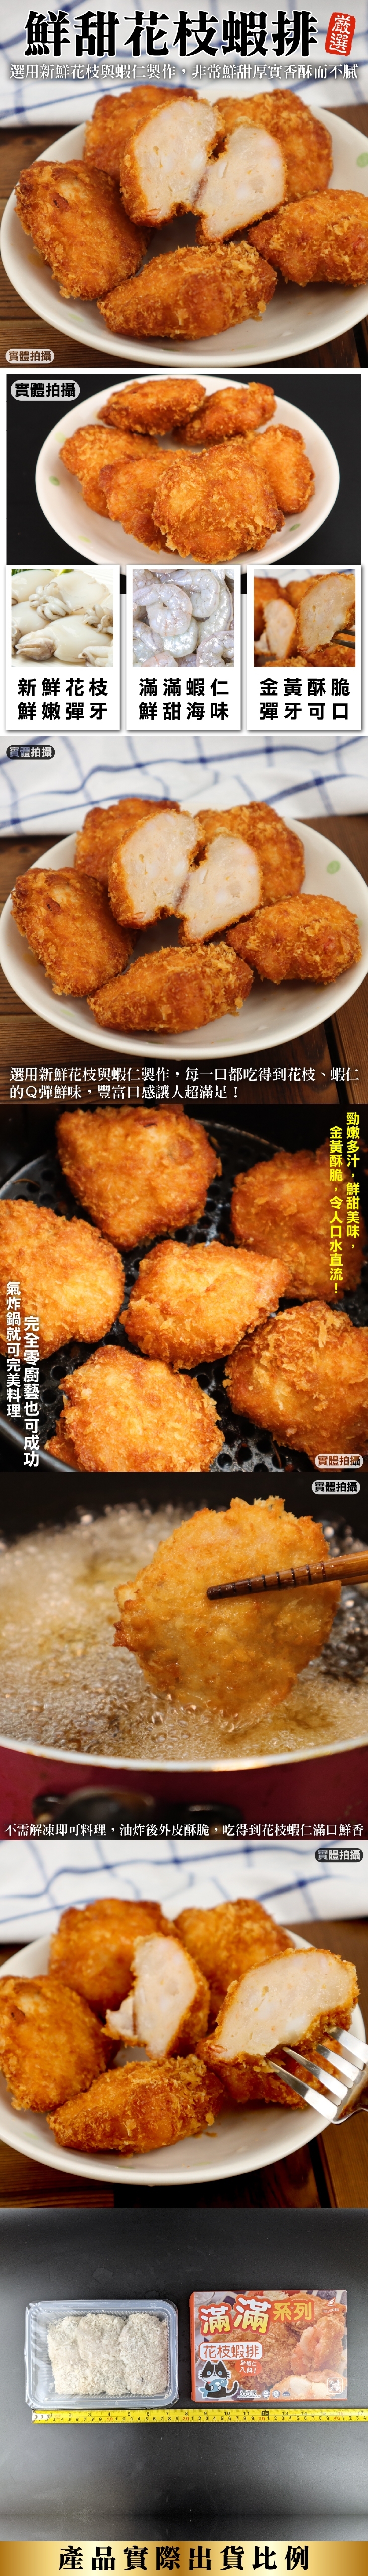       【海肉管家】滿滿花枝蝦排 共24個(每盒6個/300g)